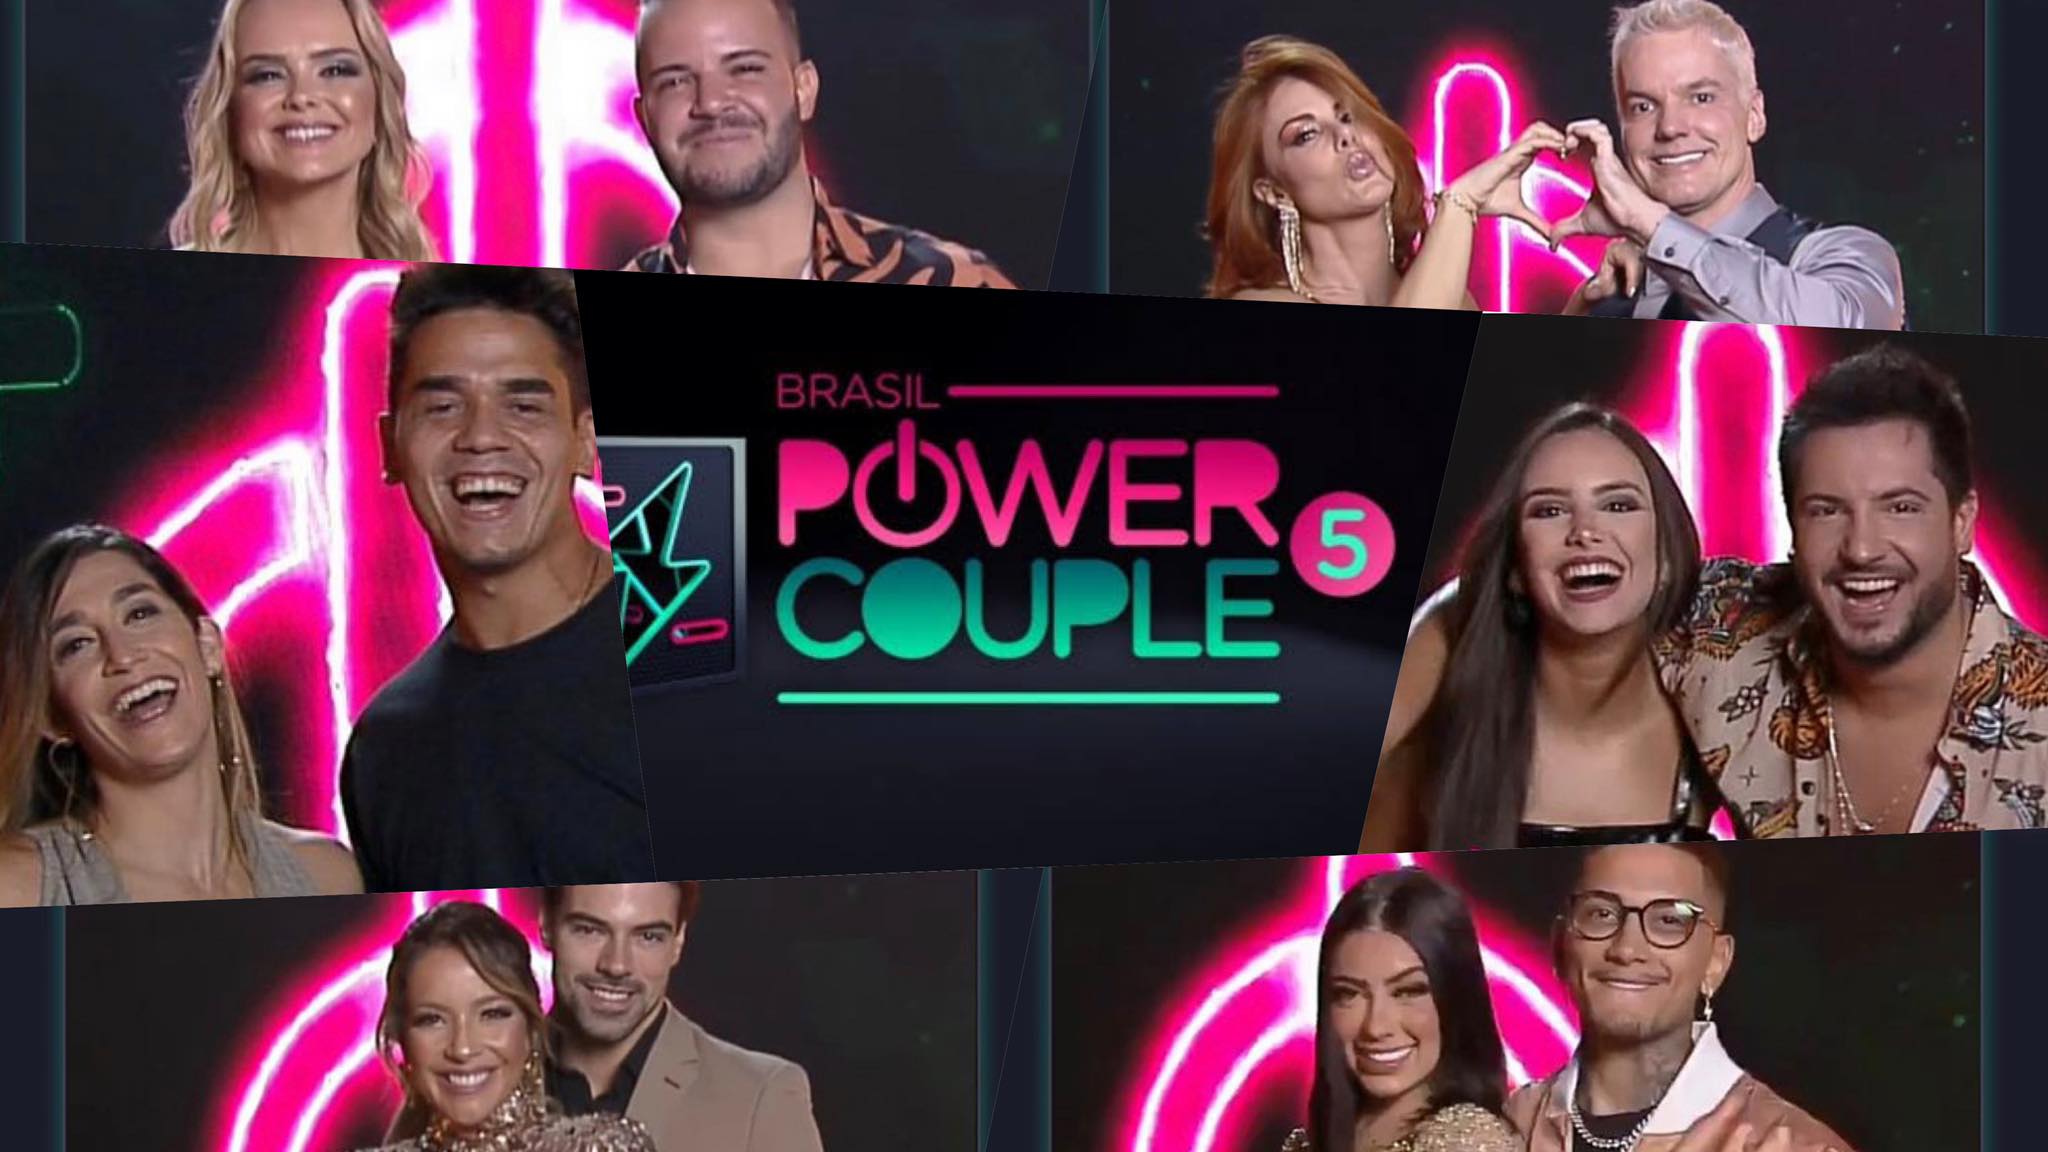 Power Couple 5 – Tudo sobre a nova temporada, dos casais à apresentadora, Adriane Galisteu